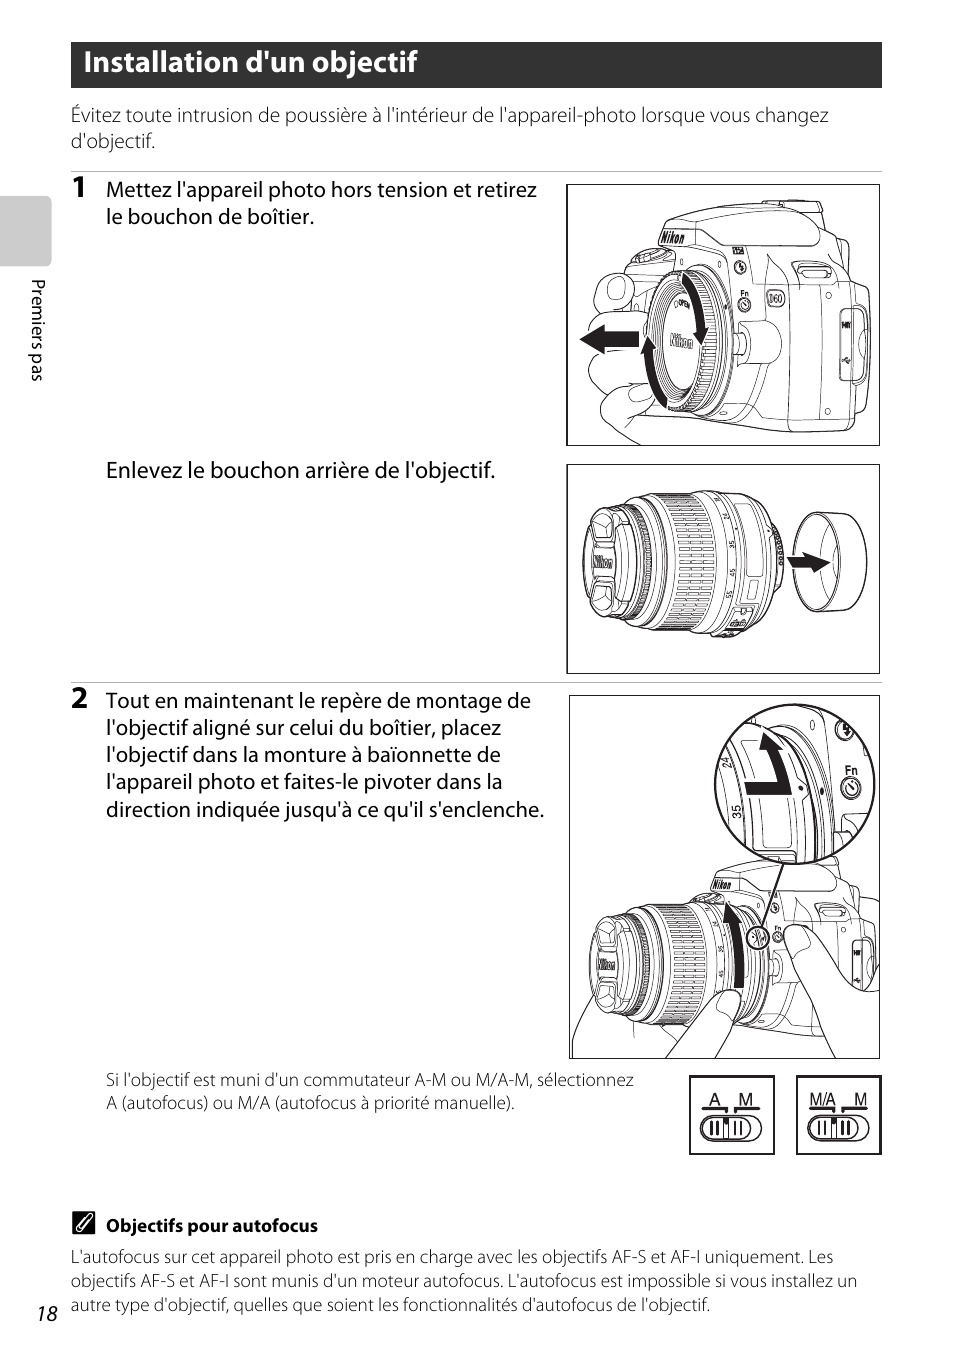 Installation d'un objectif, A 18 | Nikon D60 Manuel d'utilisation | Page 30 / 204